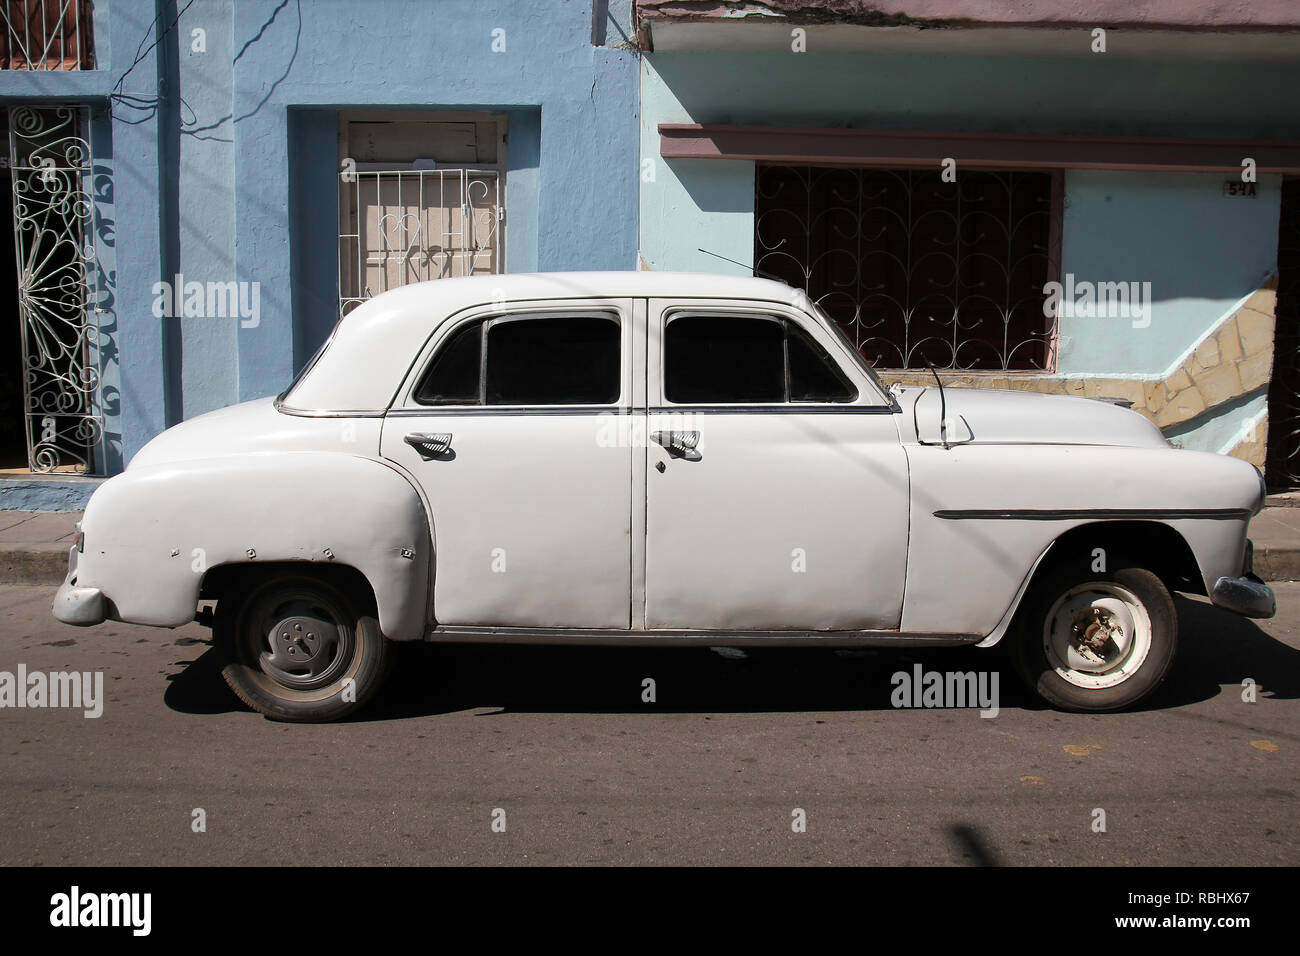 SANTA CLARA, CUBA - 21 febbraio: Classic American car il 21 febbraio 2011 in Santa Clara, Cuba. Recente legge modifica consente i cubani al commercio auto aga Foto Stock